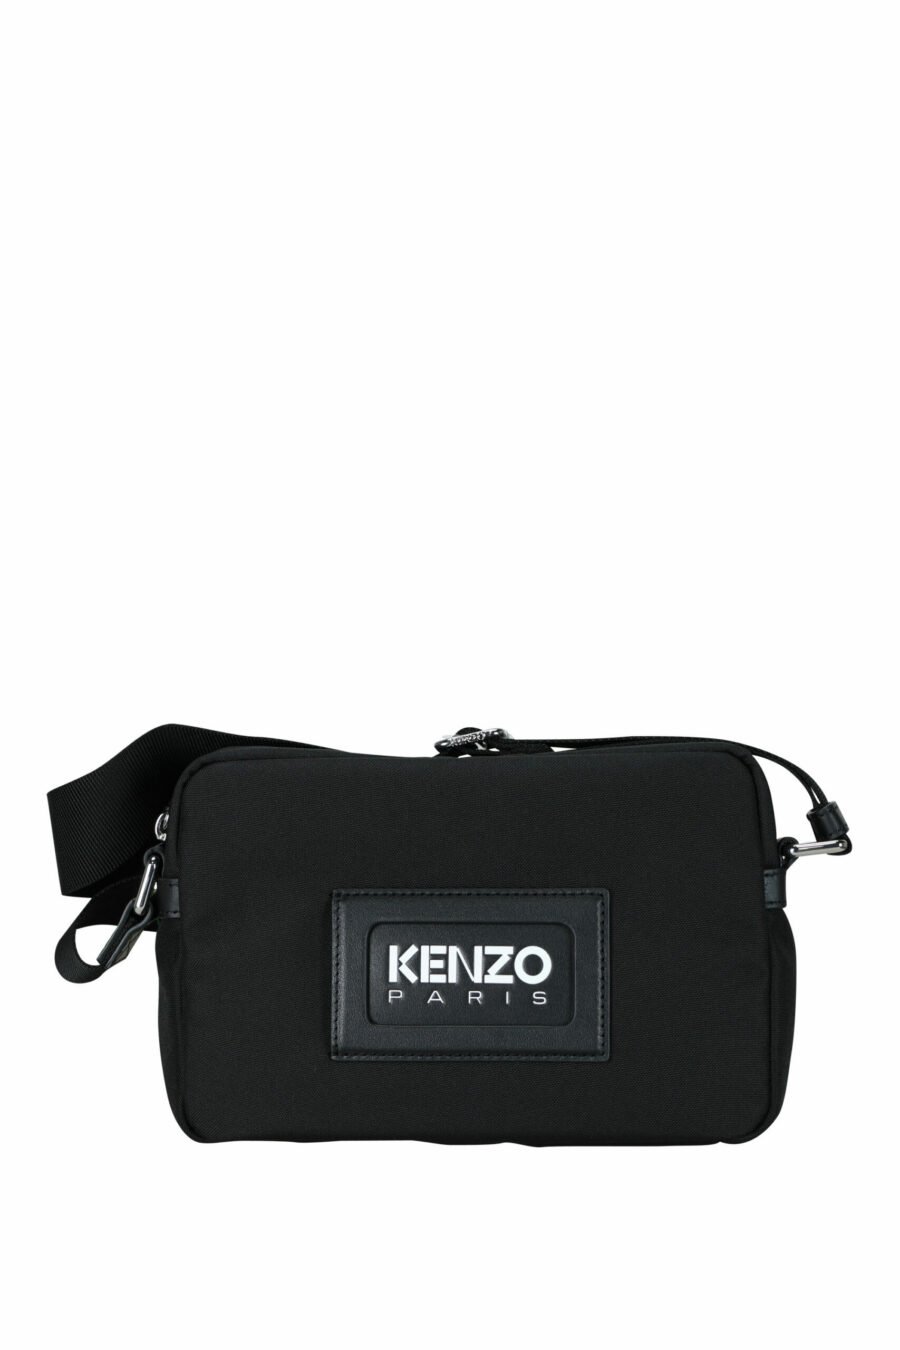 Sac à bandoulière noir avec logo "kenzography" - 3612230580084 échelonné